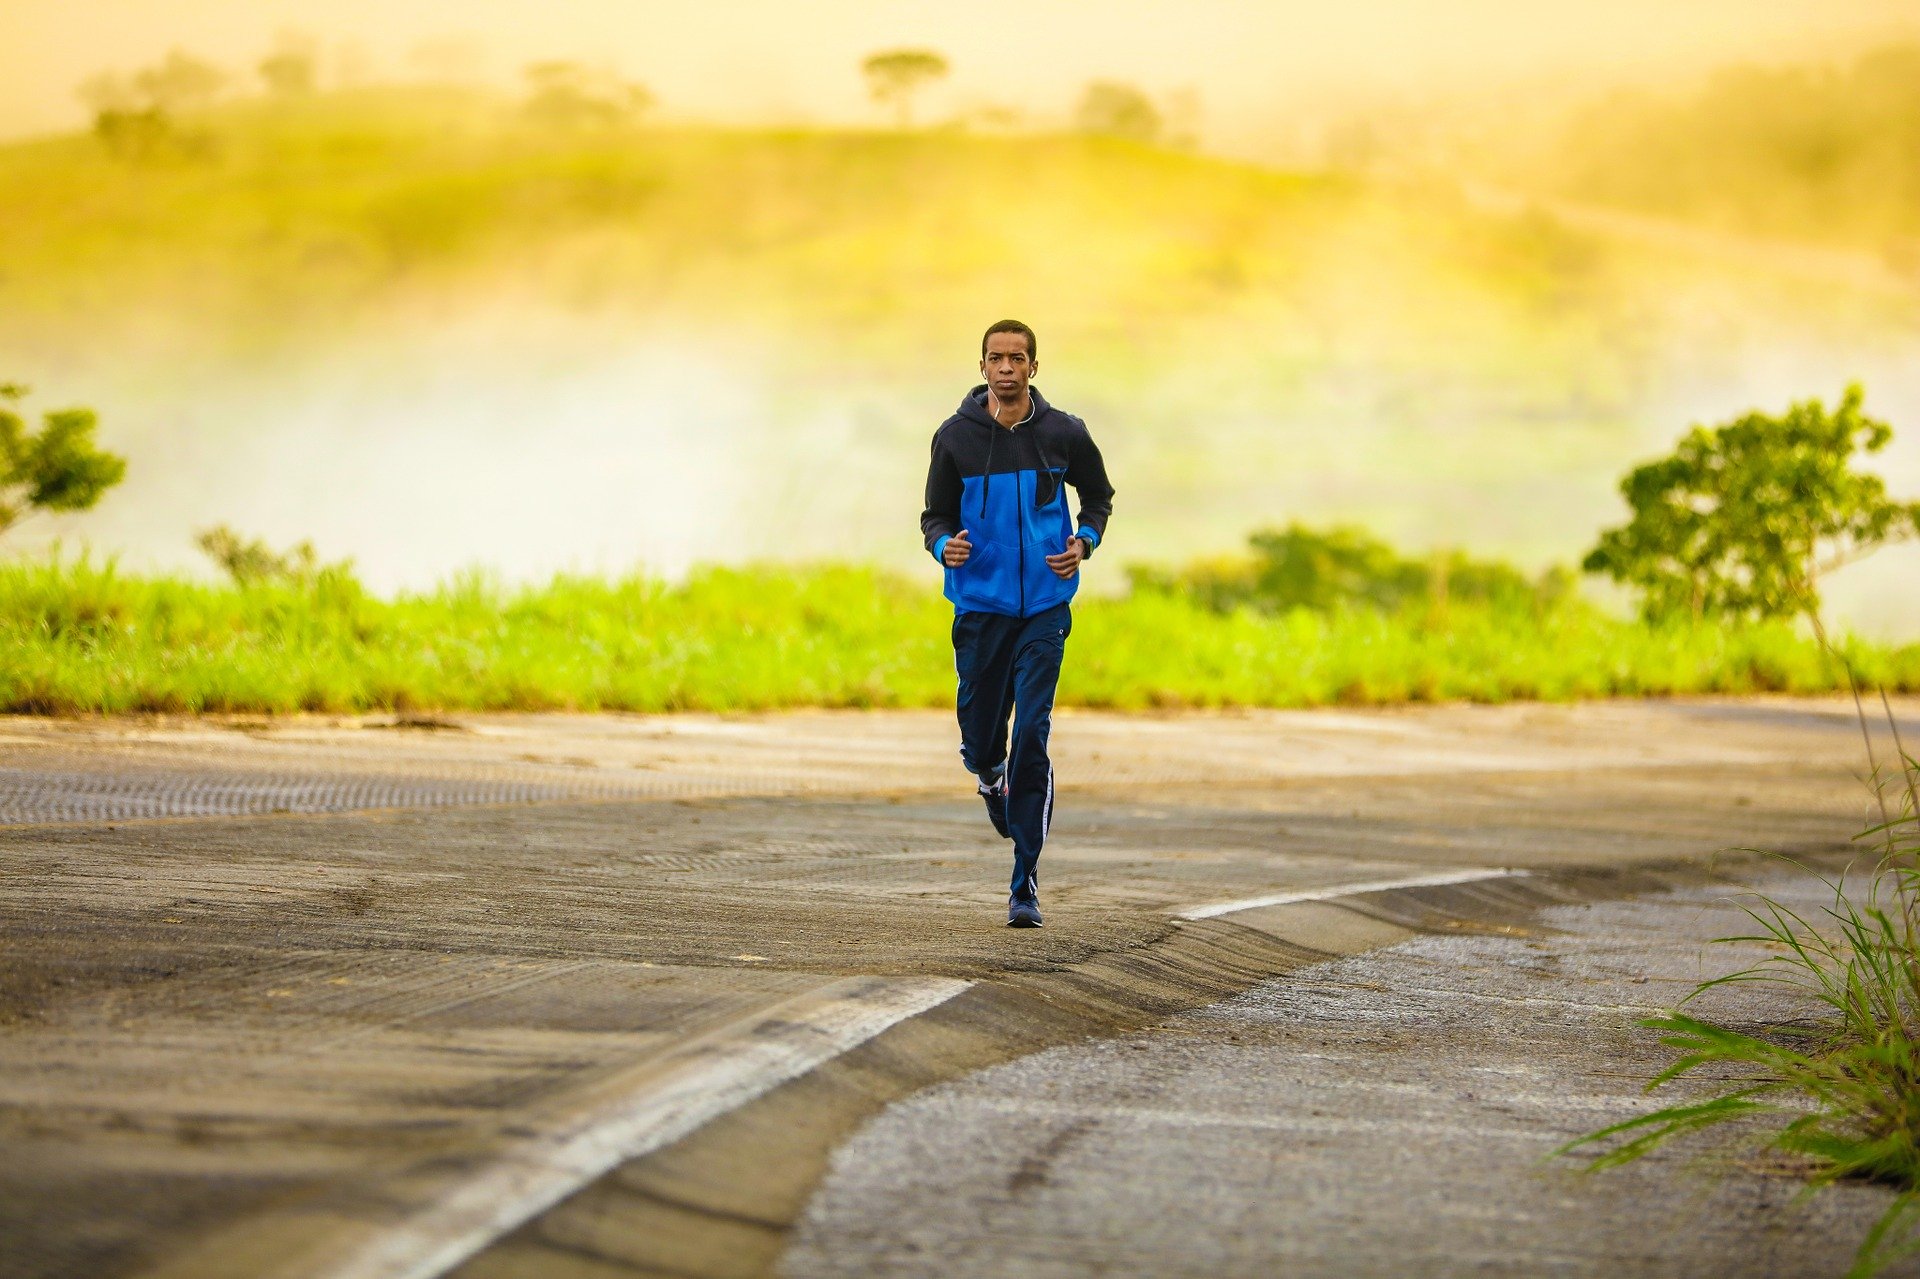 Ein junger Mann der joggt. Er trägt dabei eine blaue Sportjacke.